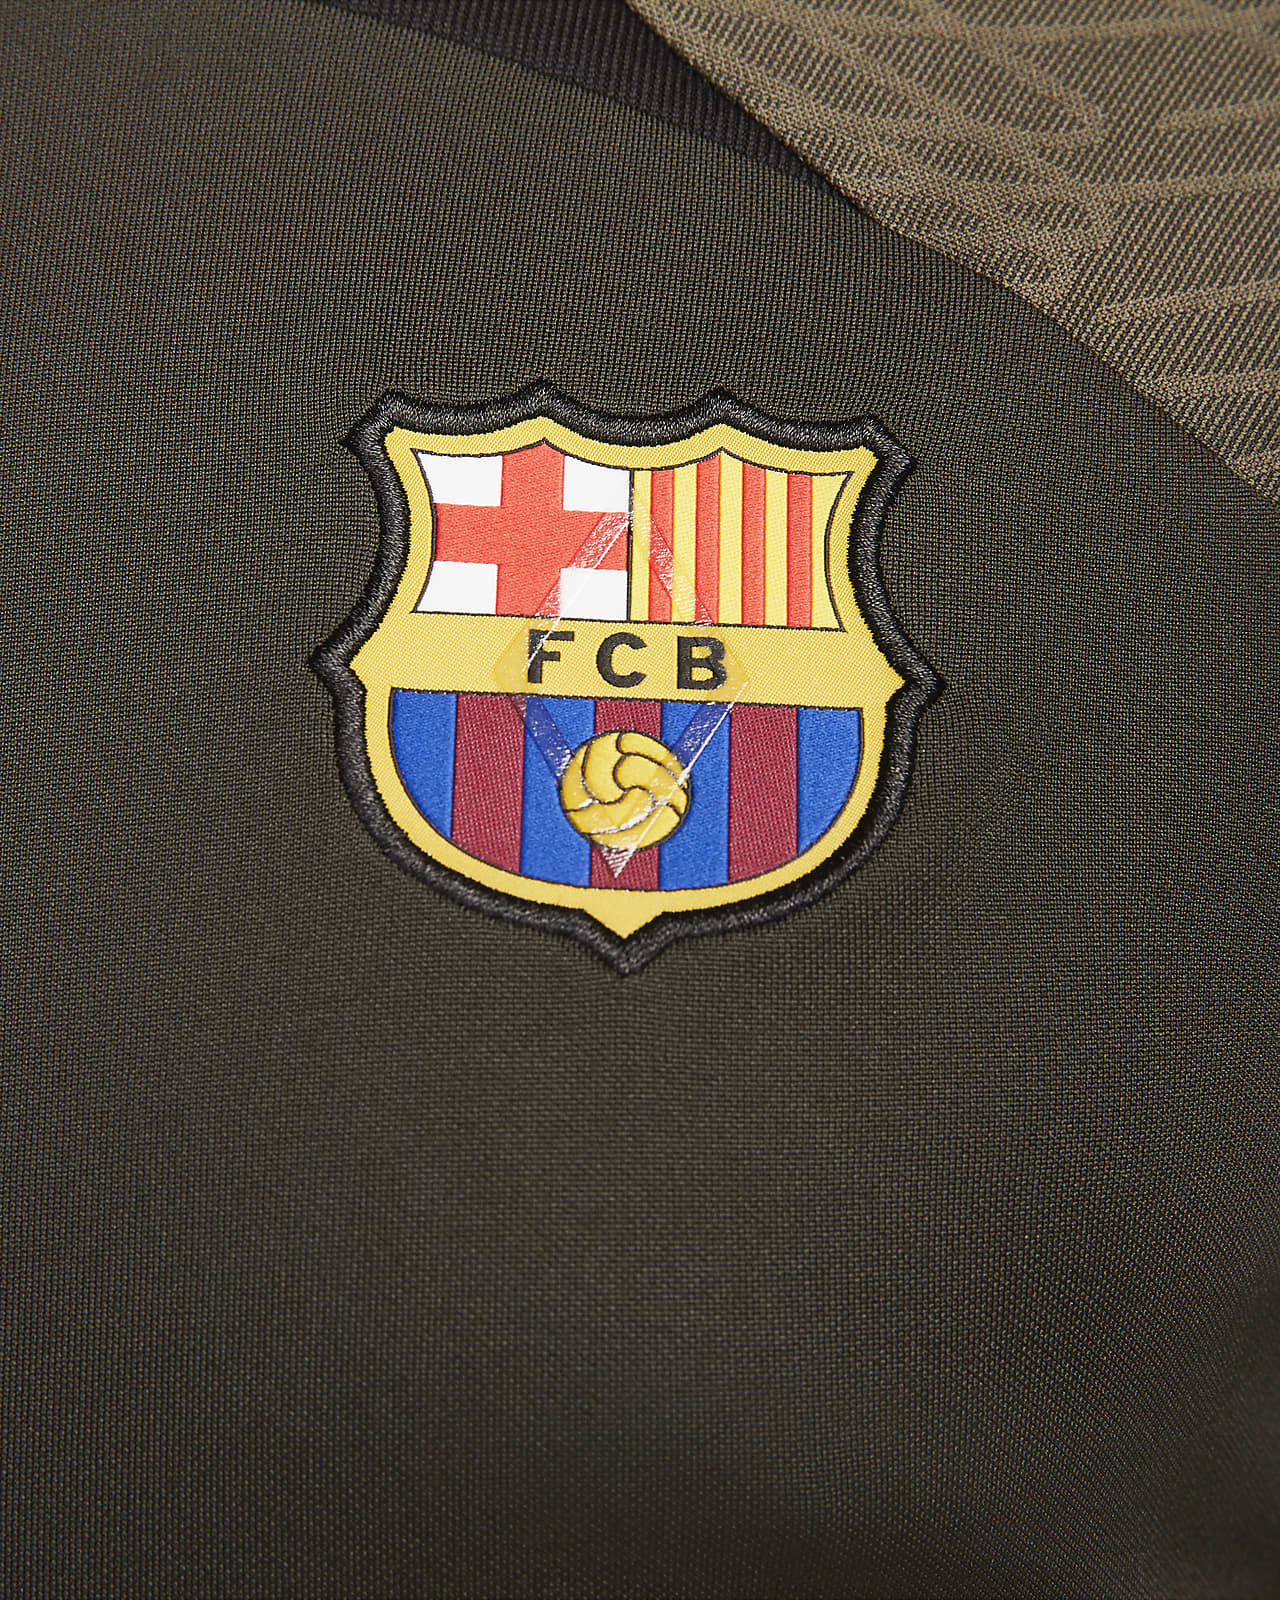 FC Barcelona Strike Men's Nike Dri-FIT Knit Soccer Top